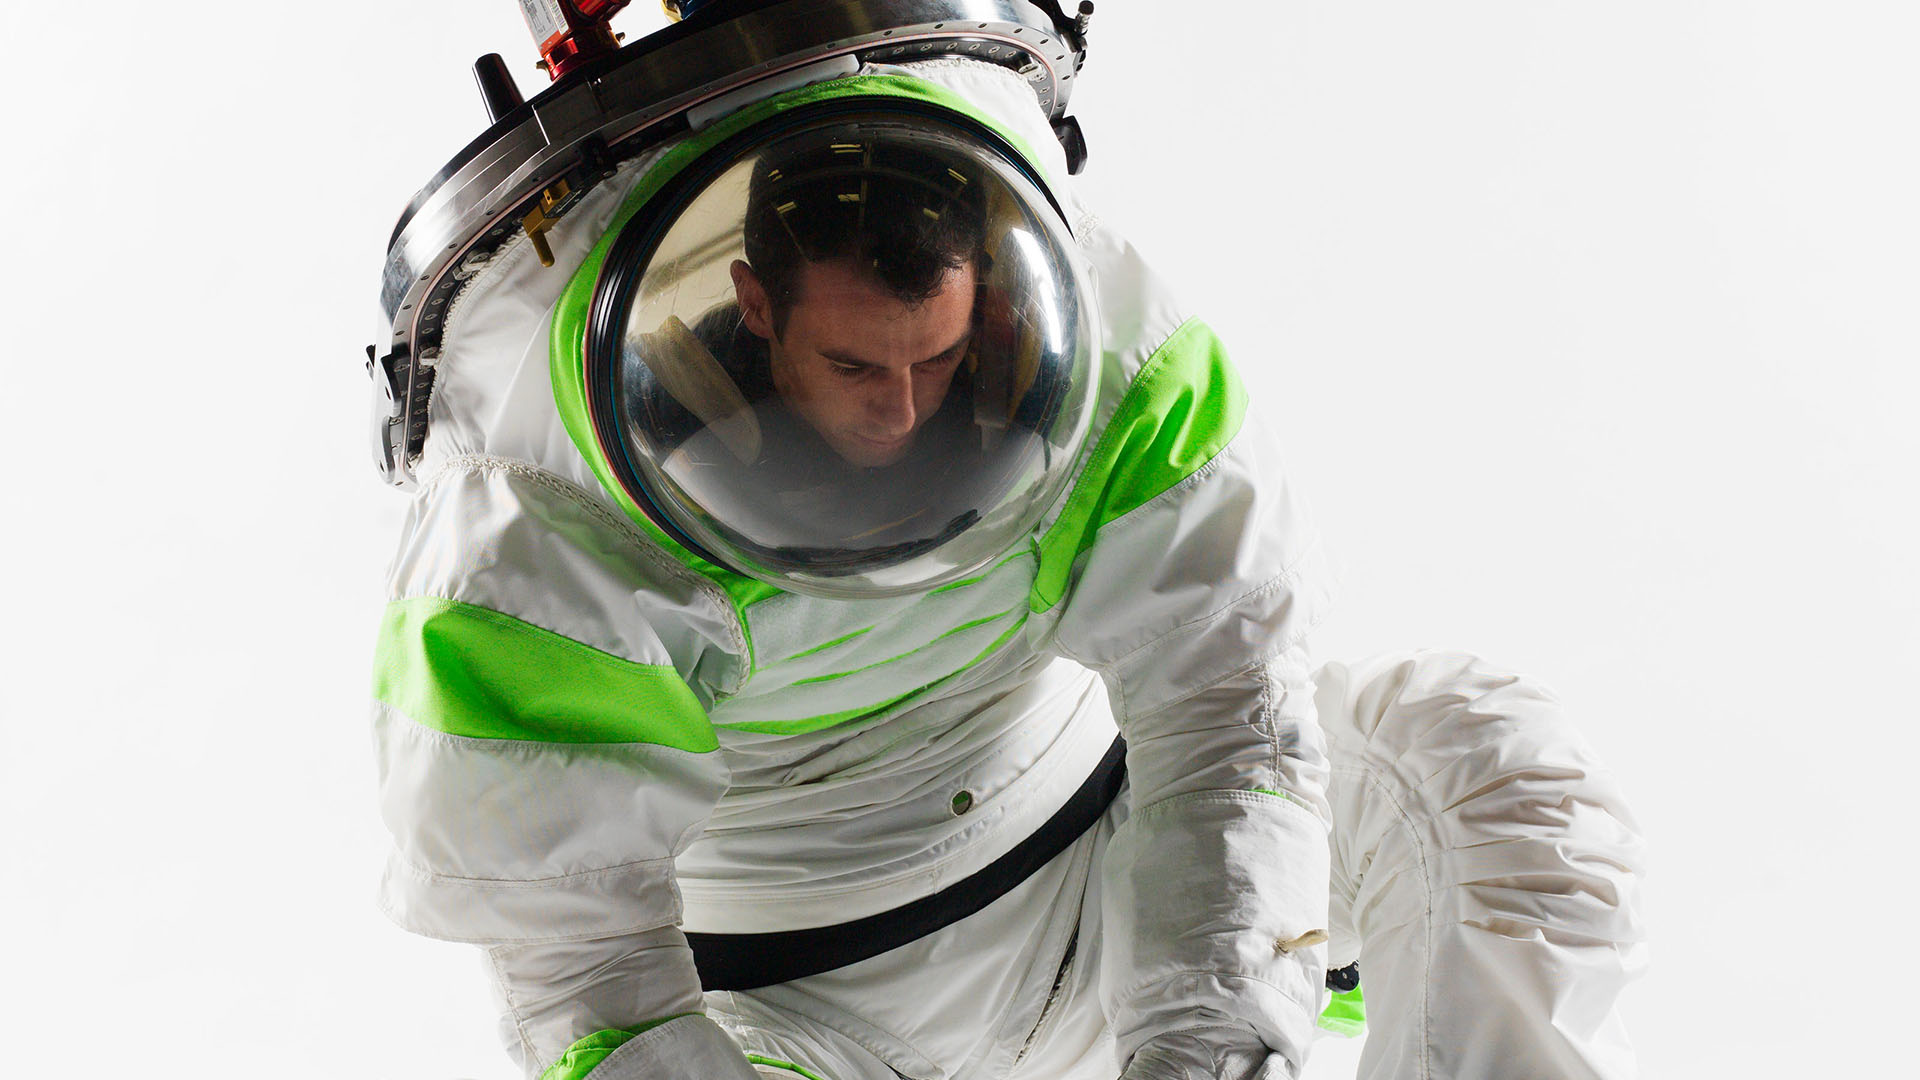 Costume d'astronaute pour l'aérospatiale, avec casque, pour